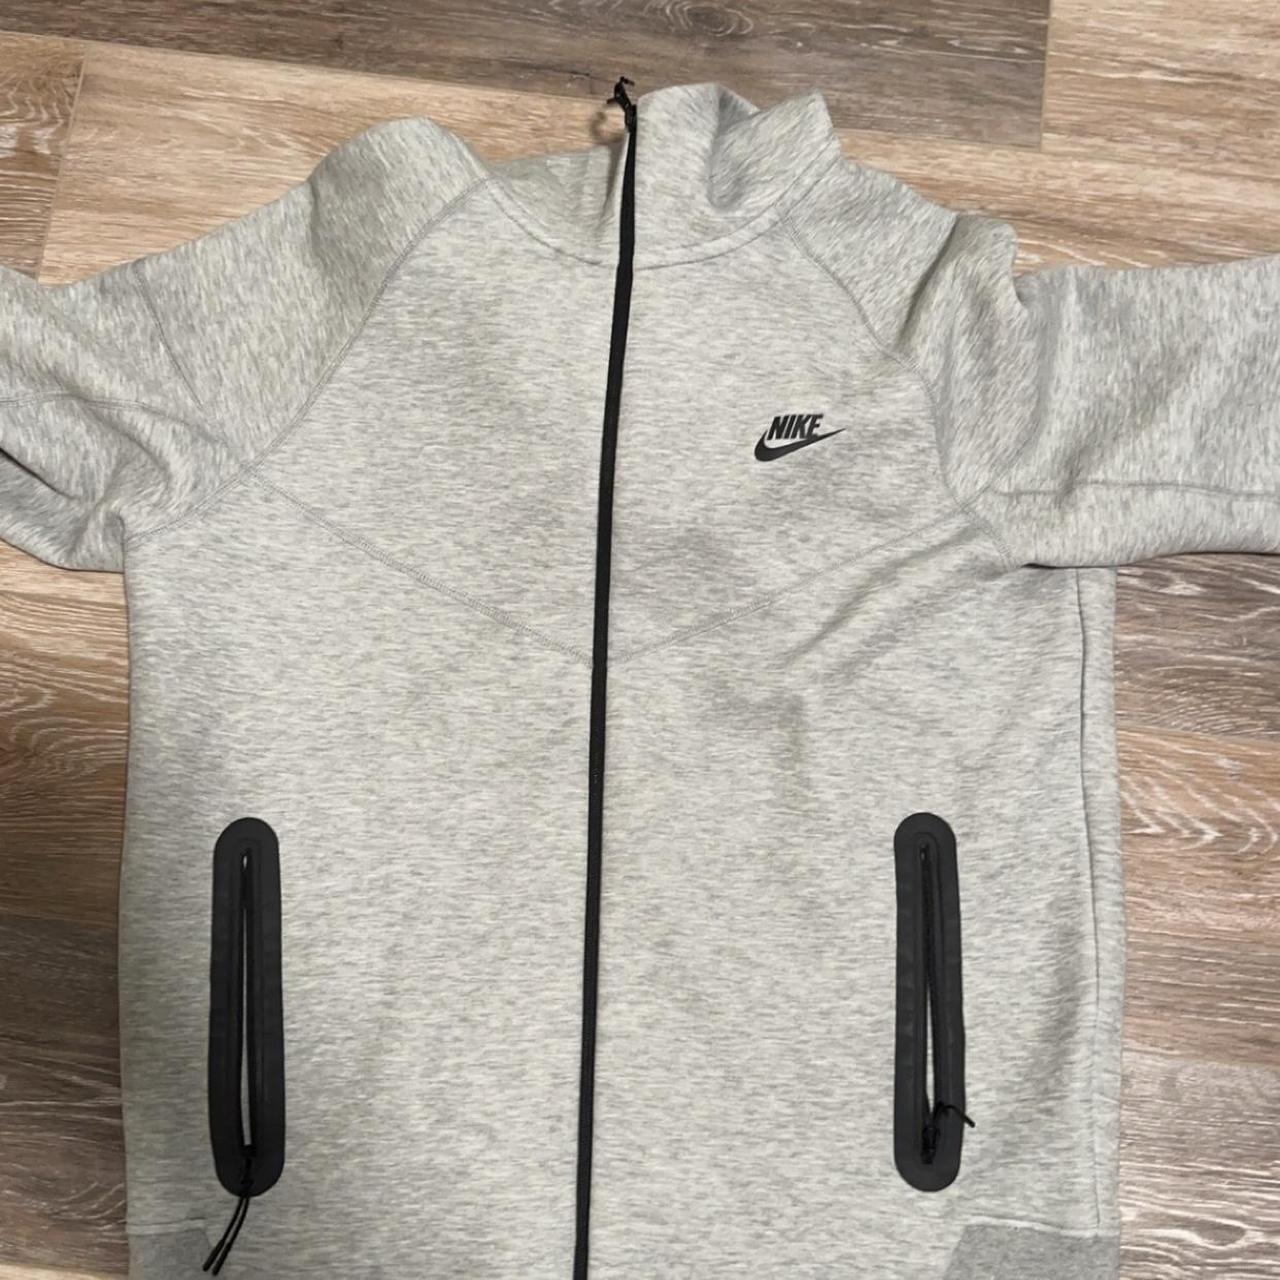 Nike tech Color grey Size L - Depop